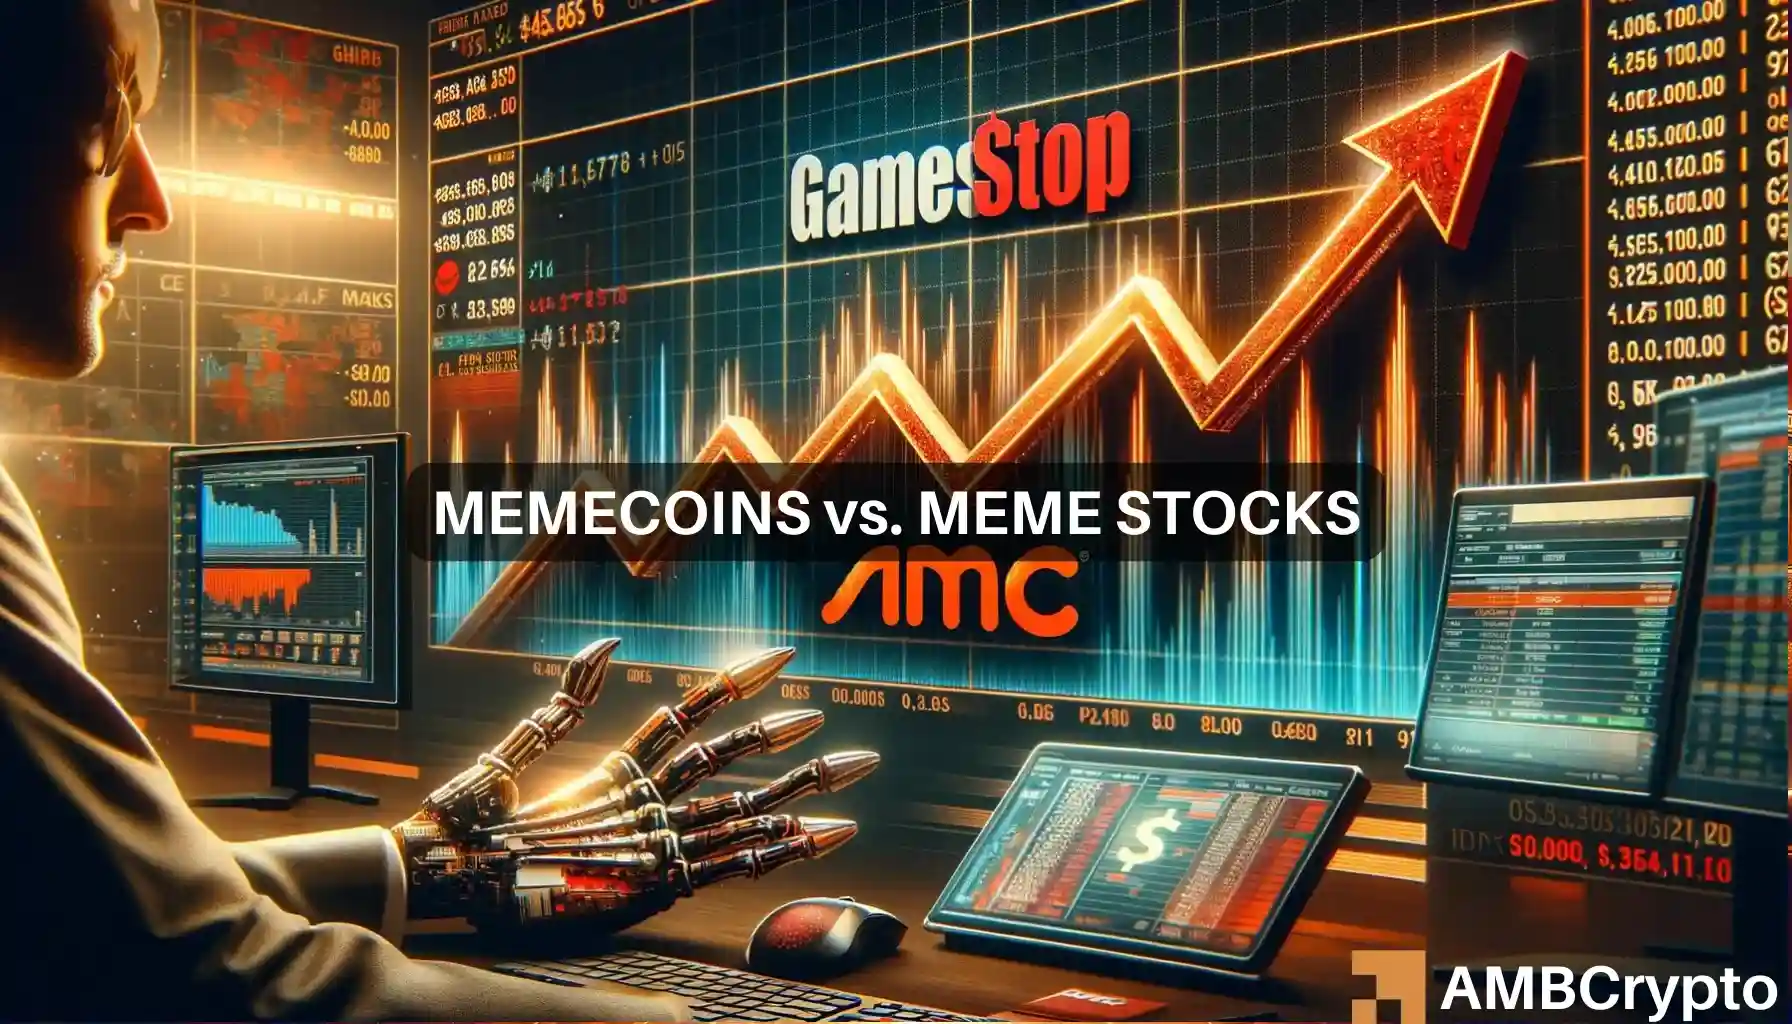 Memecoins 'just better' than meme stocks: GME, AMC drop raises questions